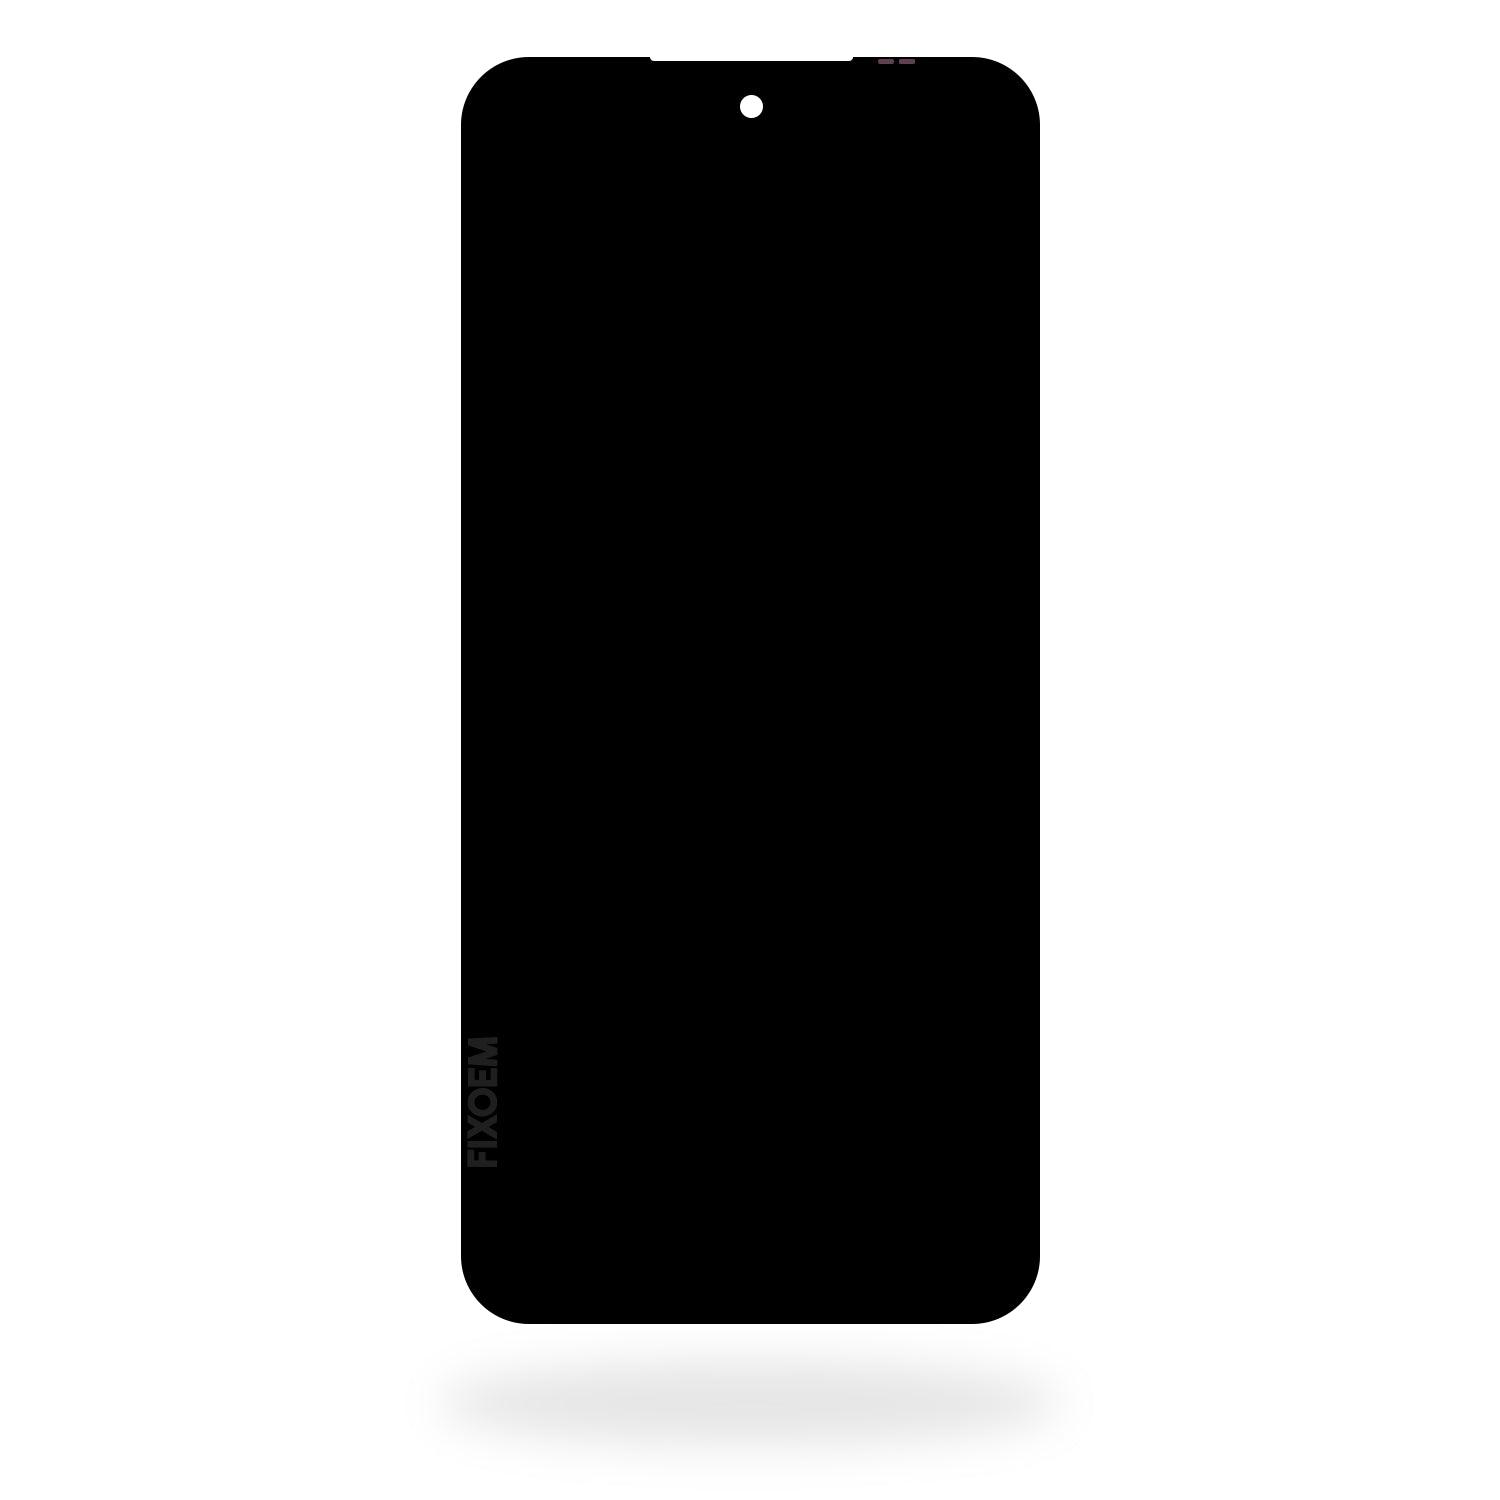 Display Xiaomi Redmi 10 / Redmi 10 Prime 21061119al a solo $ 270.00 Refaccion y puestos celulares, refurbish y microelectronica.- FixOEM